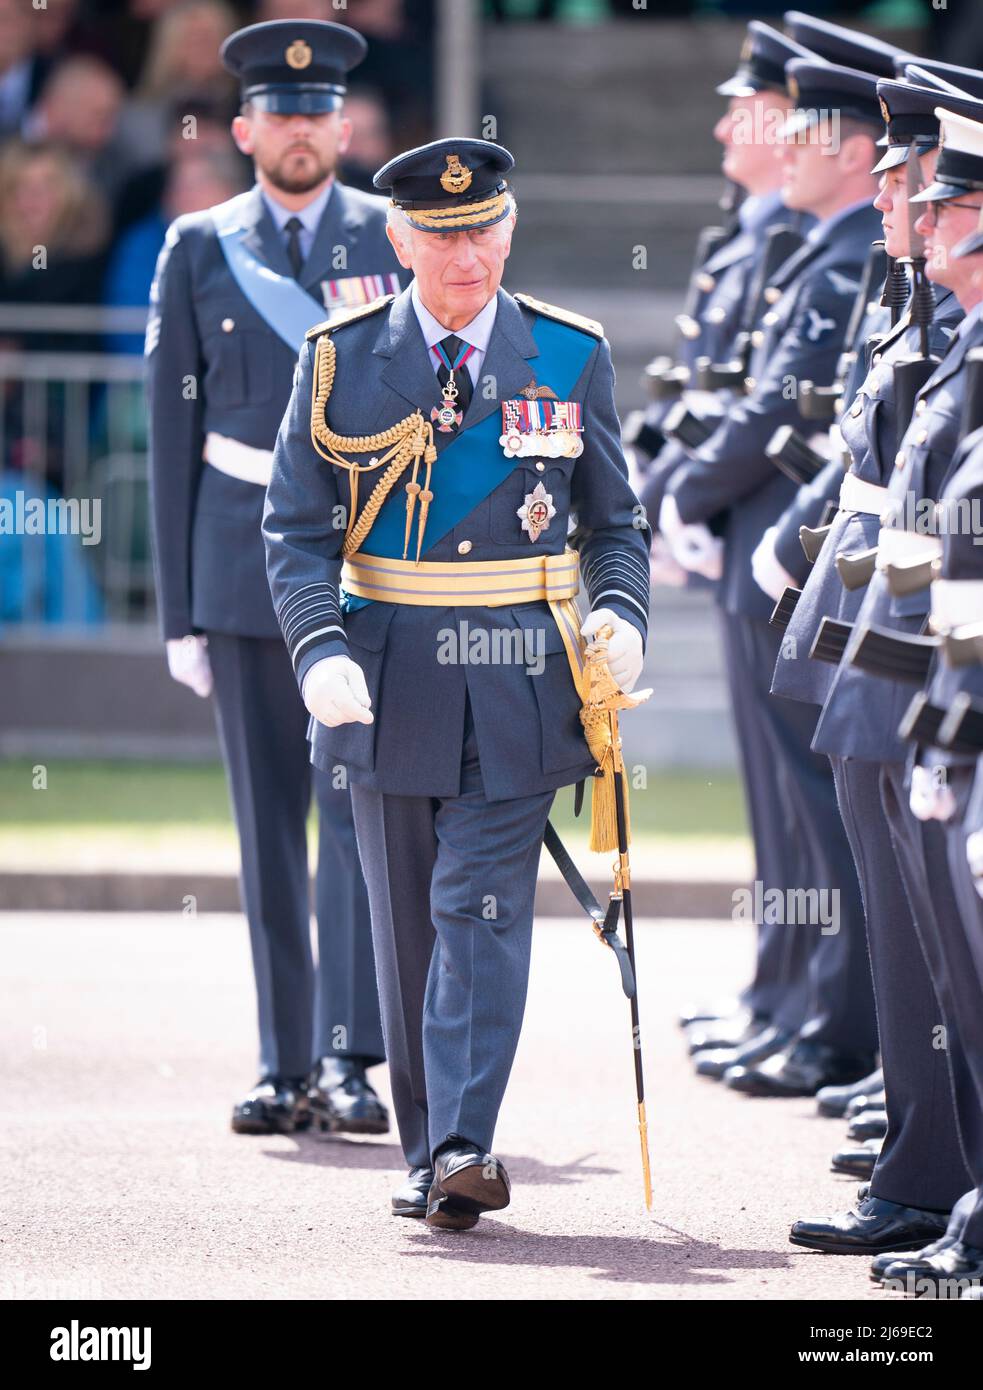 Der Prinz von Wales, Marschall der Royal Air Force, nimmt an einer Parade bei RAFC, Cranwell, Sleaford, in Lincolnshire Teil, die für Offiziere und Flieger, die während der Covid-Pandemie ihren Abschluss bei RAF Cranwell und RAF Halton gemacht haben, ohne dass Gäste dabei waren, abgehalten wurde. Bilddatum: Freitag, 29. April 2022. Stockfoto